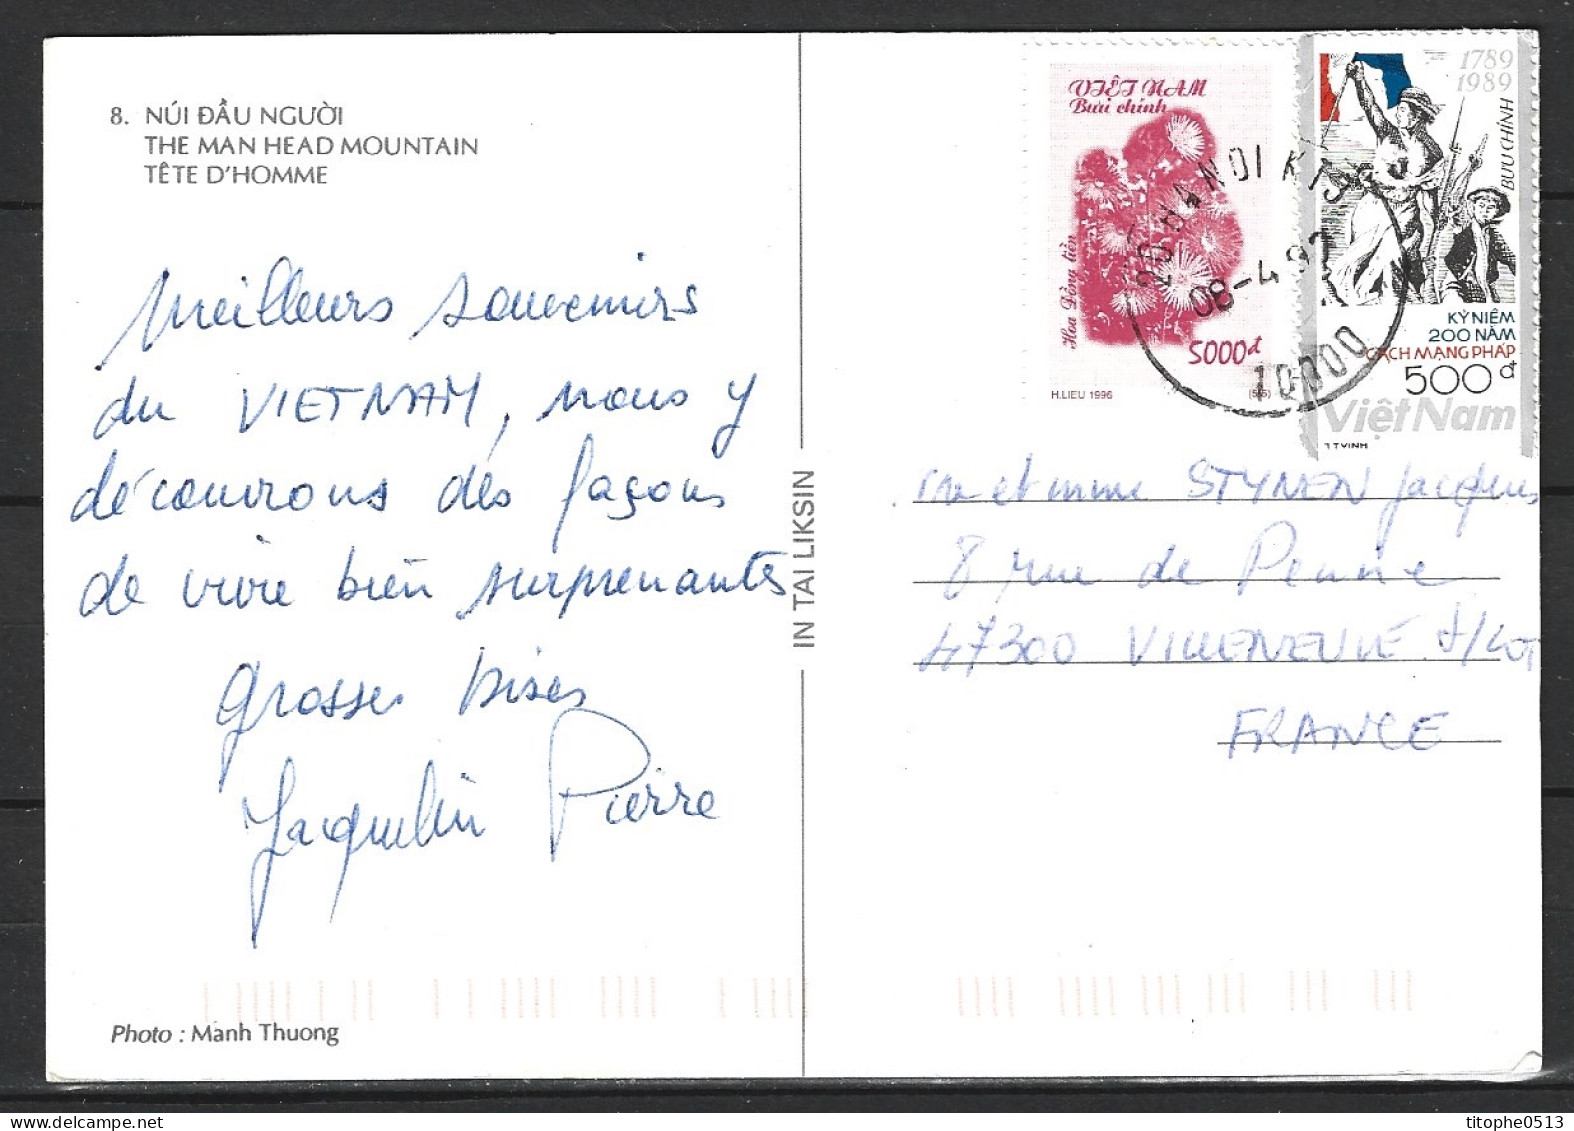 VIETNAM. N°988 De 1989 Sur Carte Postale Ayant Circulé. Liberté Guidant Le Peuple. - Franse Revolutie